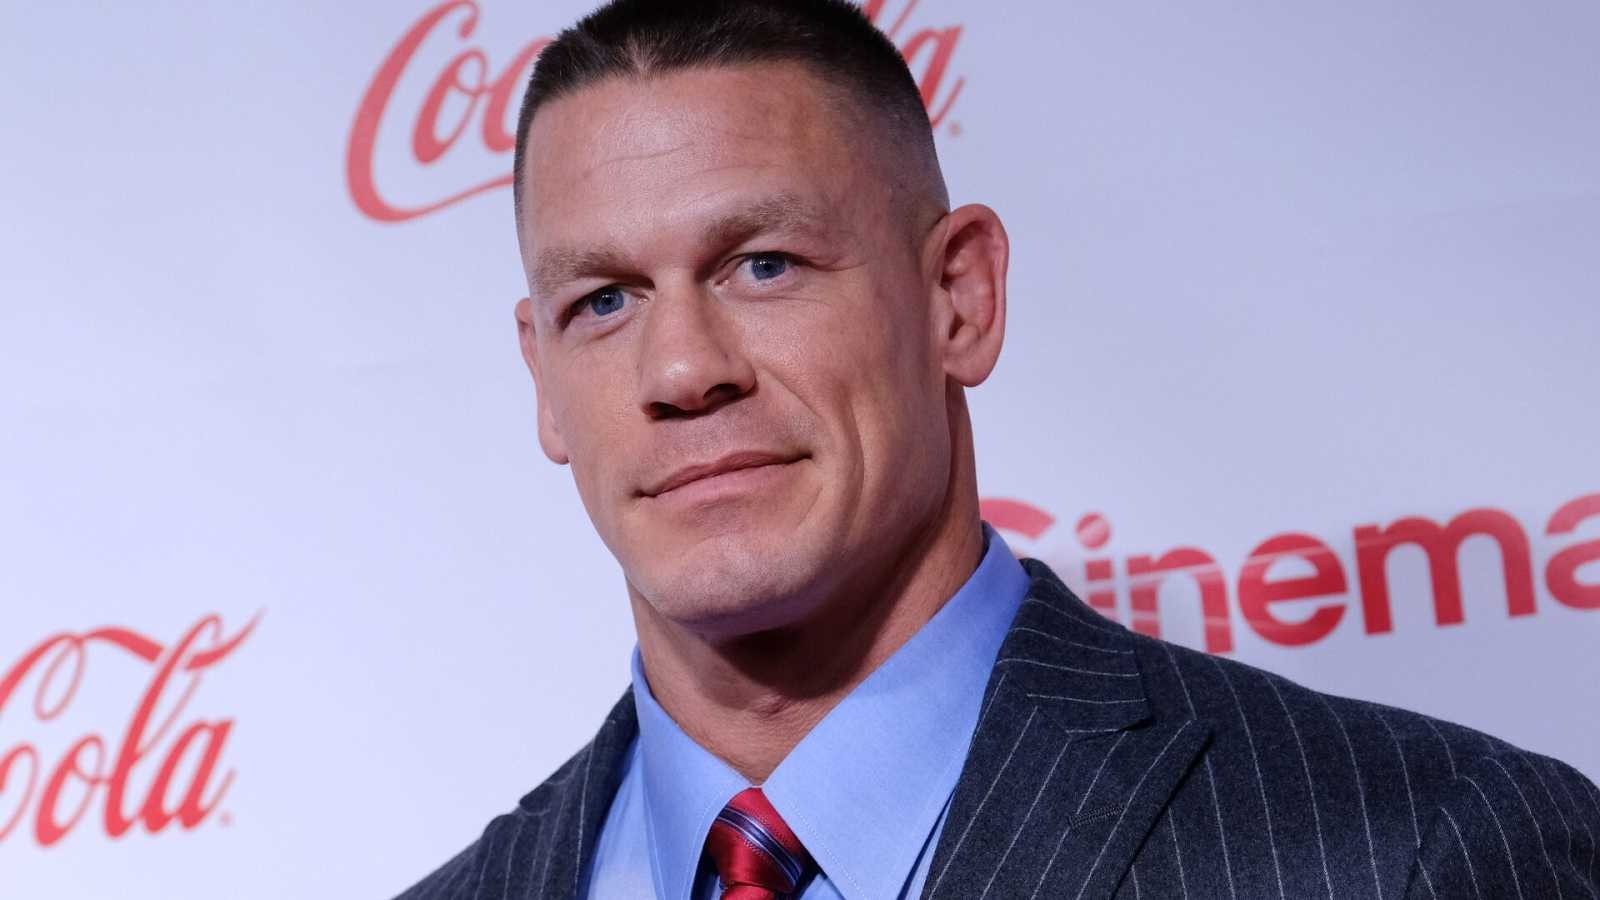 John Cena at an event